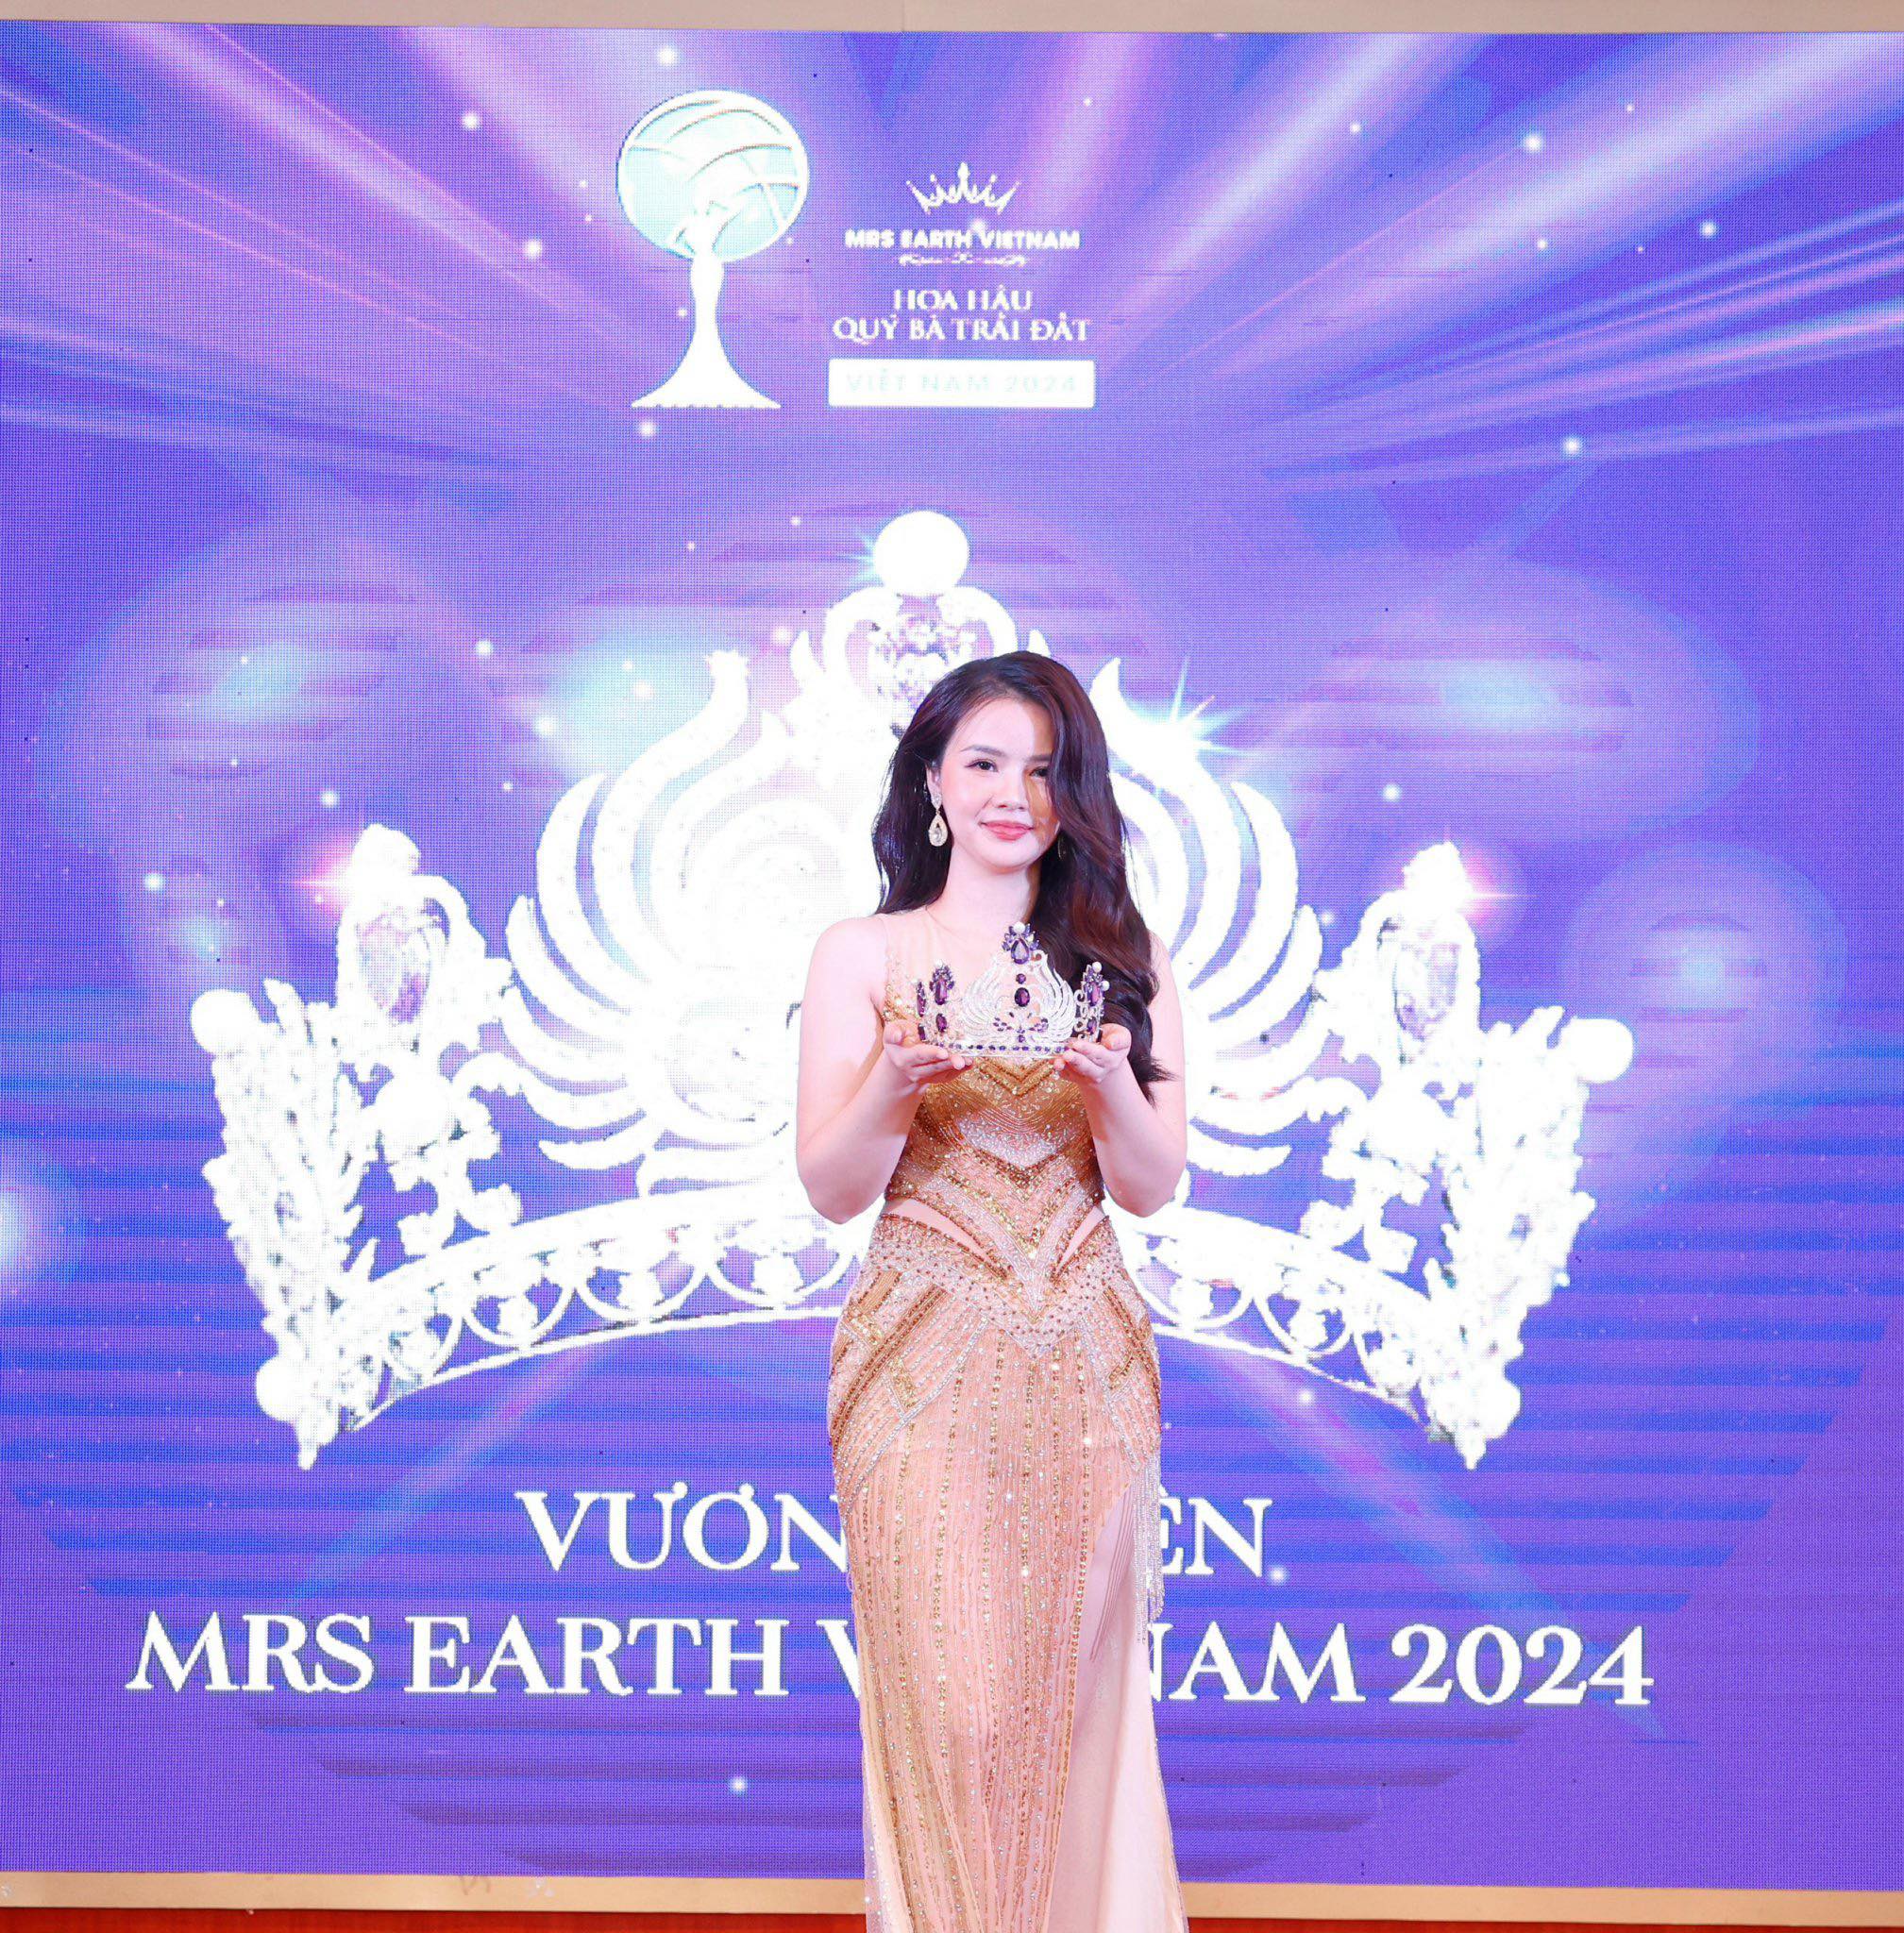 Hoa hậu Sao Mai cầm trên tay chiếc vương miện dành cho người đẹp đoạt danh hiệu Hoa hậu quý bà Trái đất Việt Nam 2024. Ảnh: BTCc